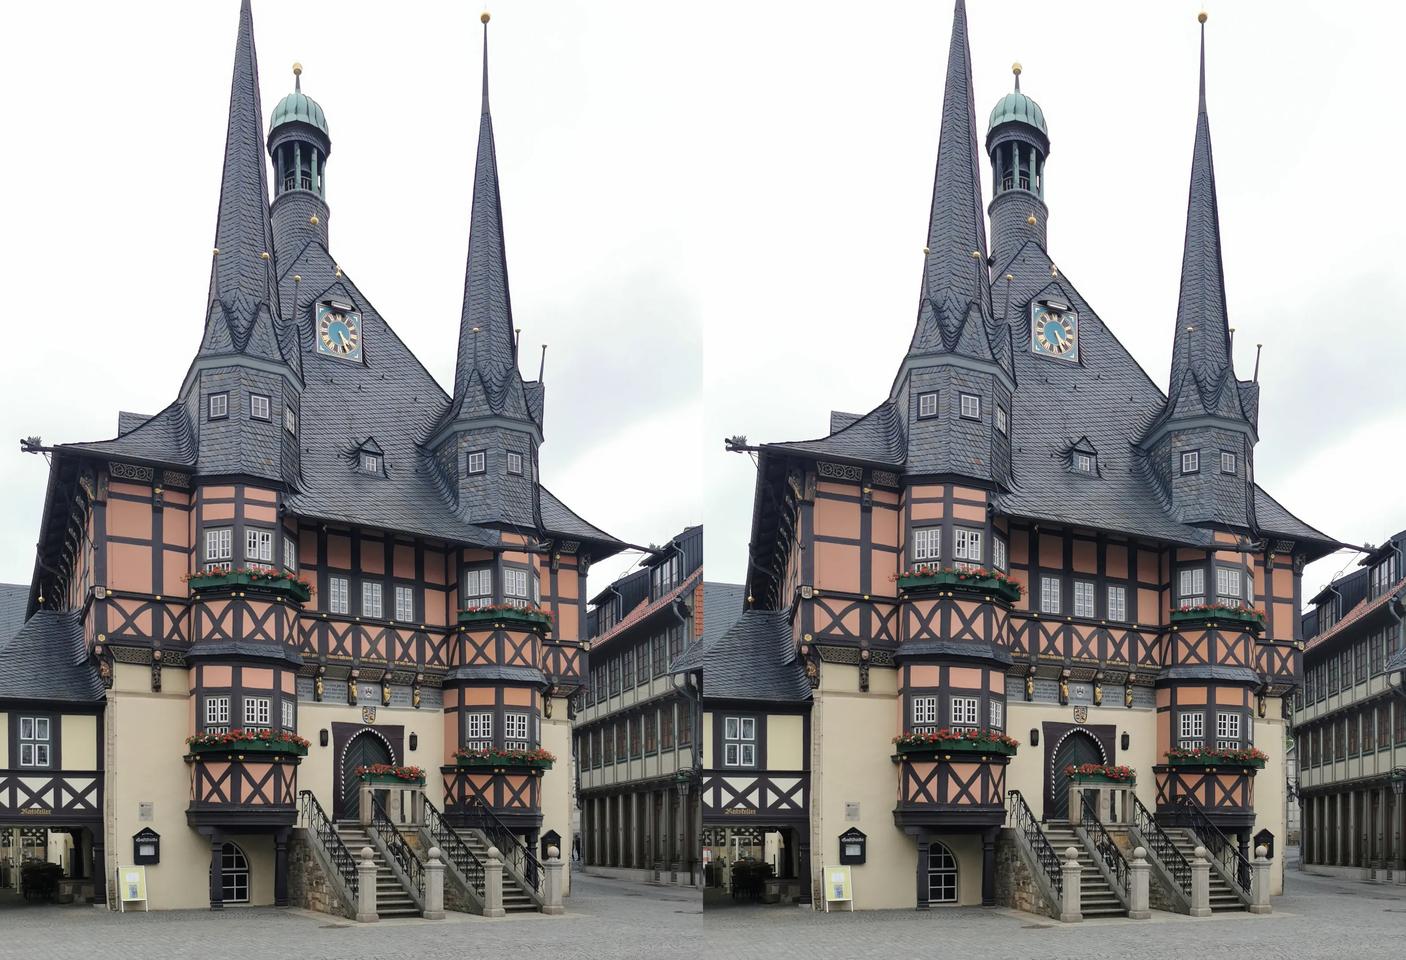 Wernigerode - Altes Rathaus